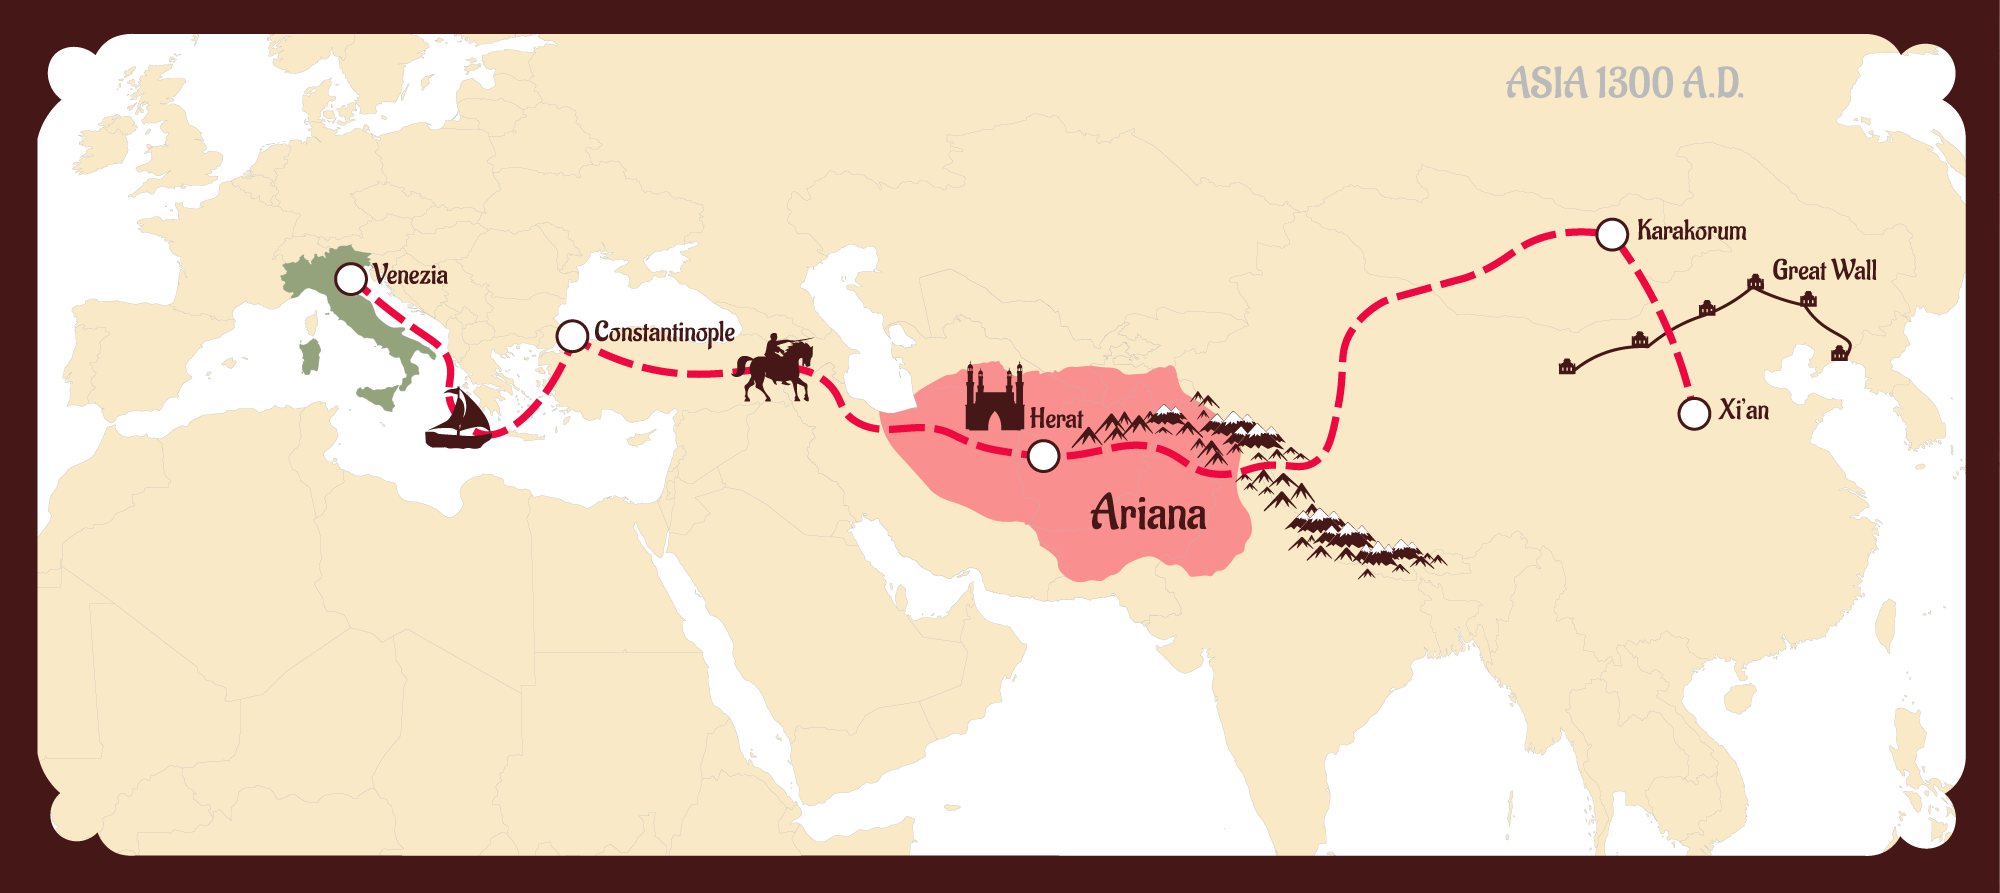 Бокс великий шелковый путь. Великий шелковый путь Крым. Великий шелковый путь 14 век.